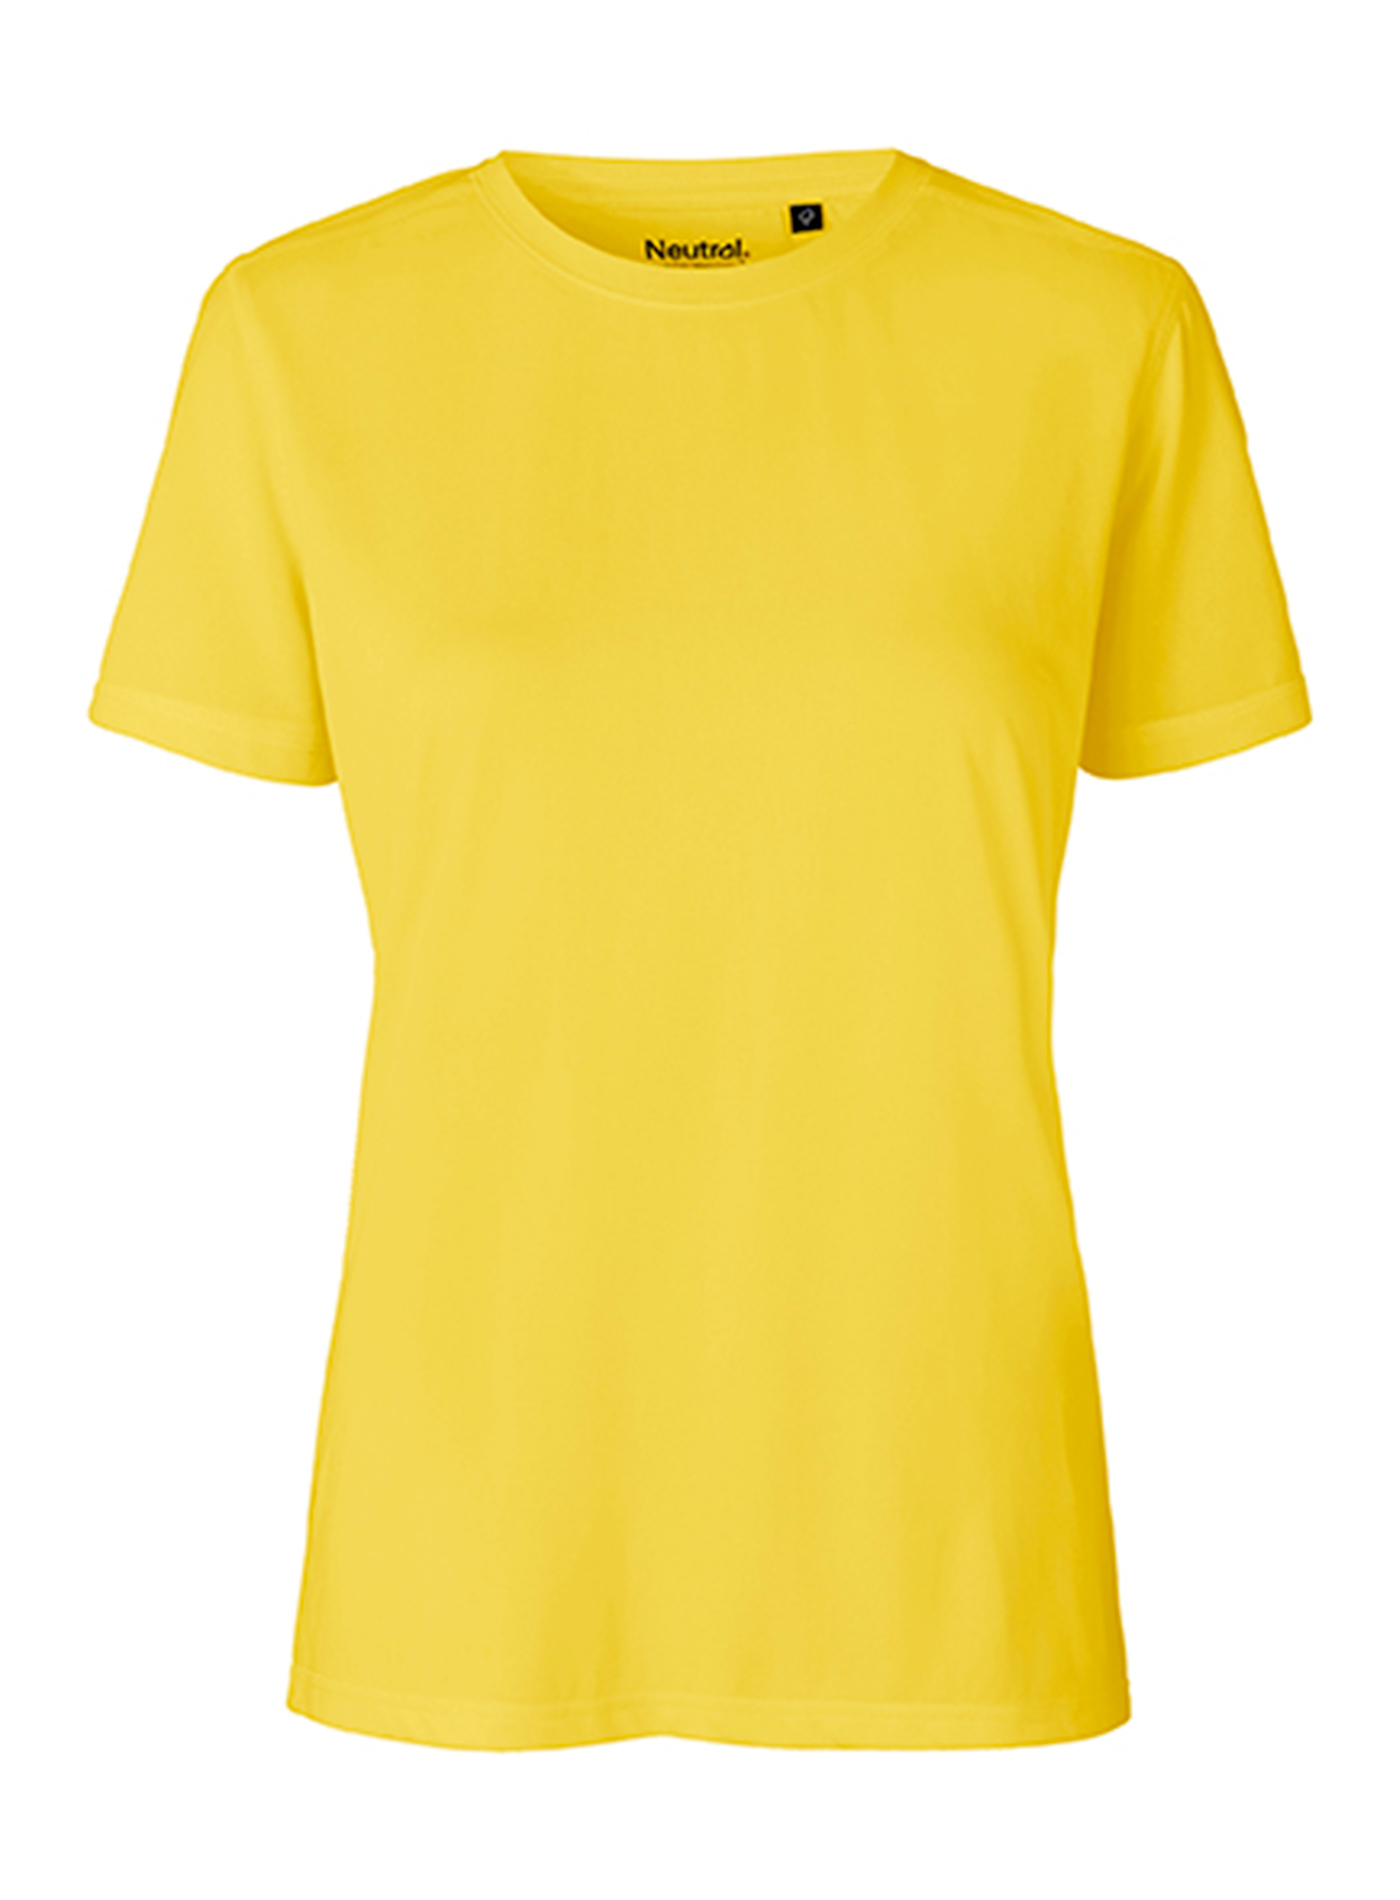 Dámské tričko Performance Neutral - Žlutá S